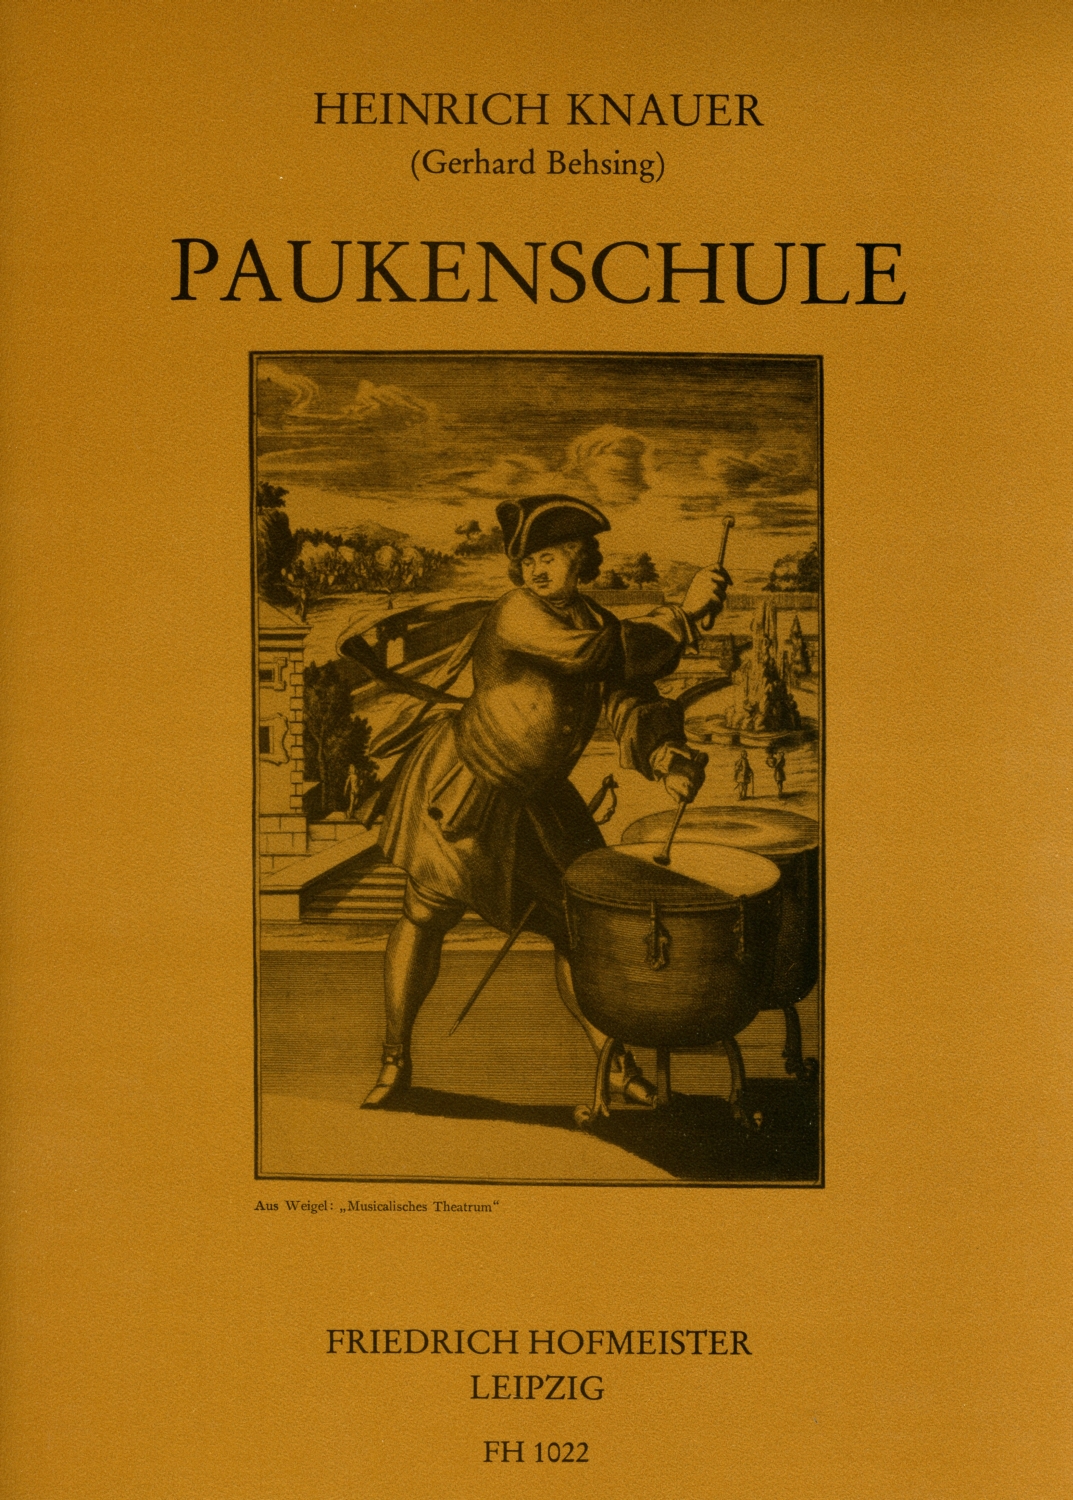 heinrich-knauer-kleine-paukenschule-pk-_0001.JPG